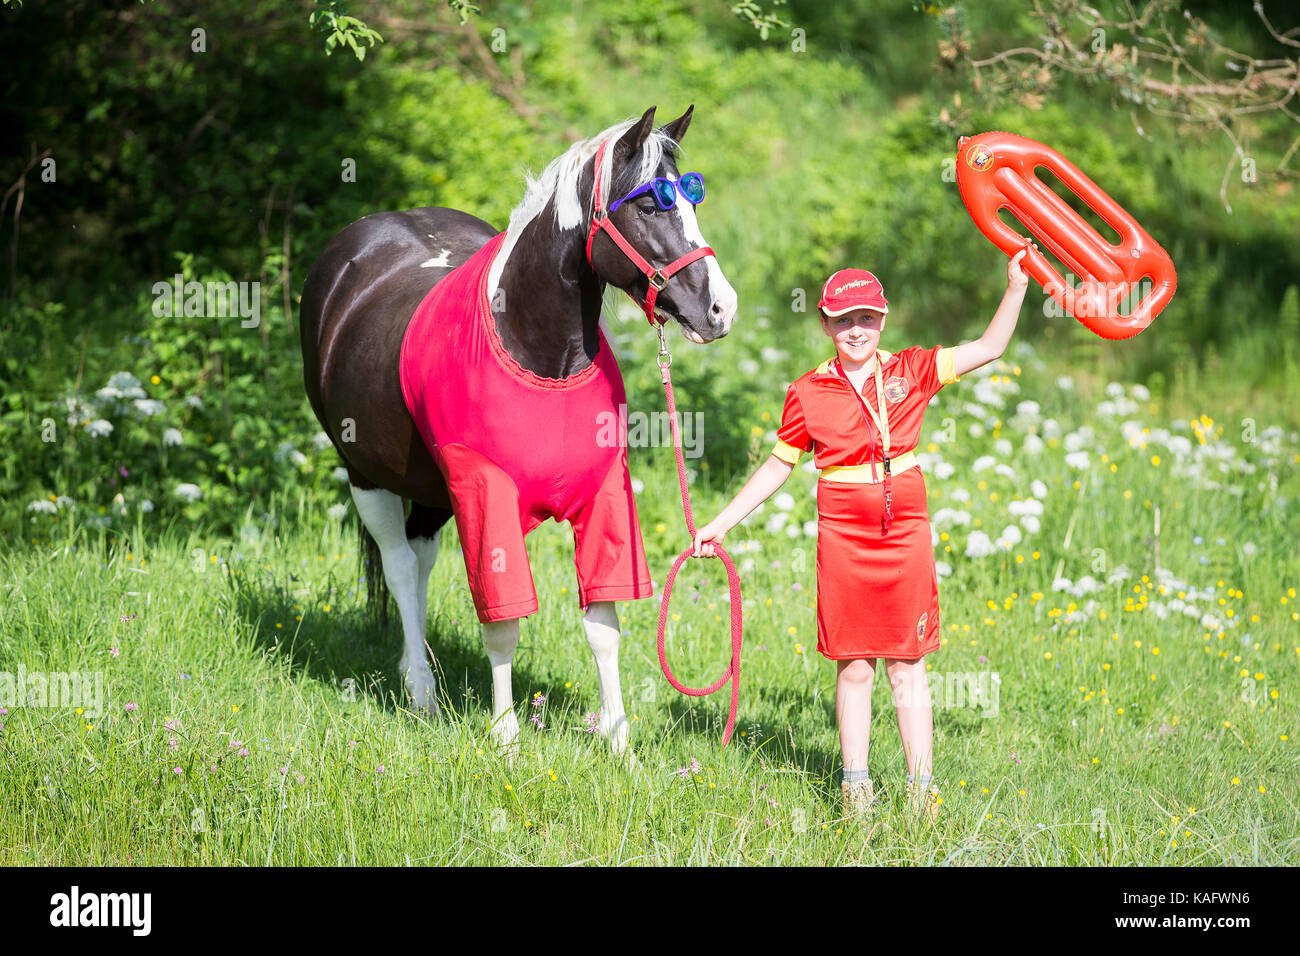 American Paint horse. Enfant et cheval en costumes de sauveteur (baywatch). L'Autriche Banque D'Images